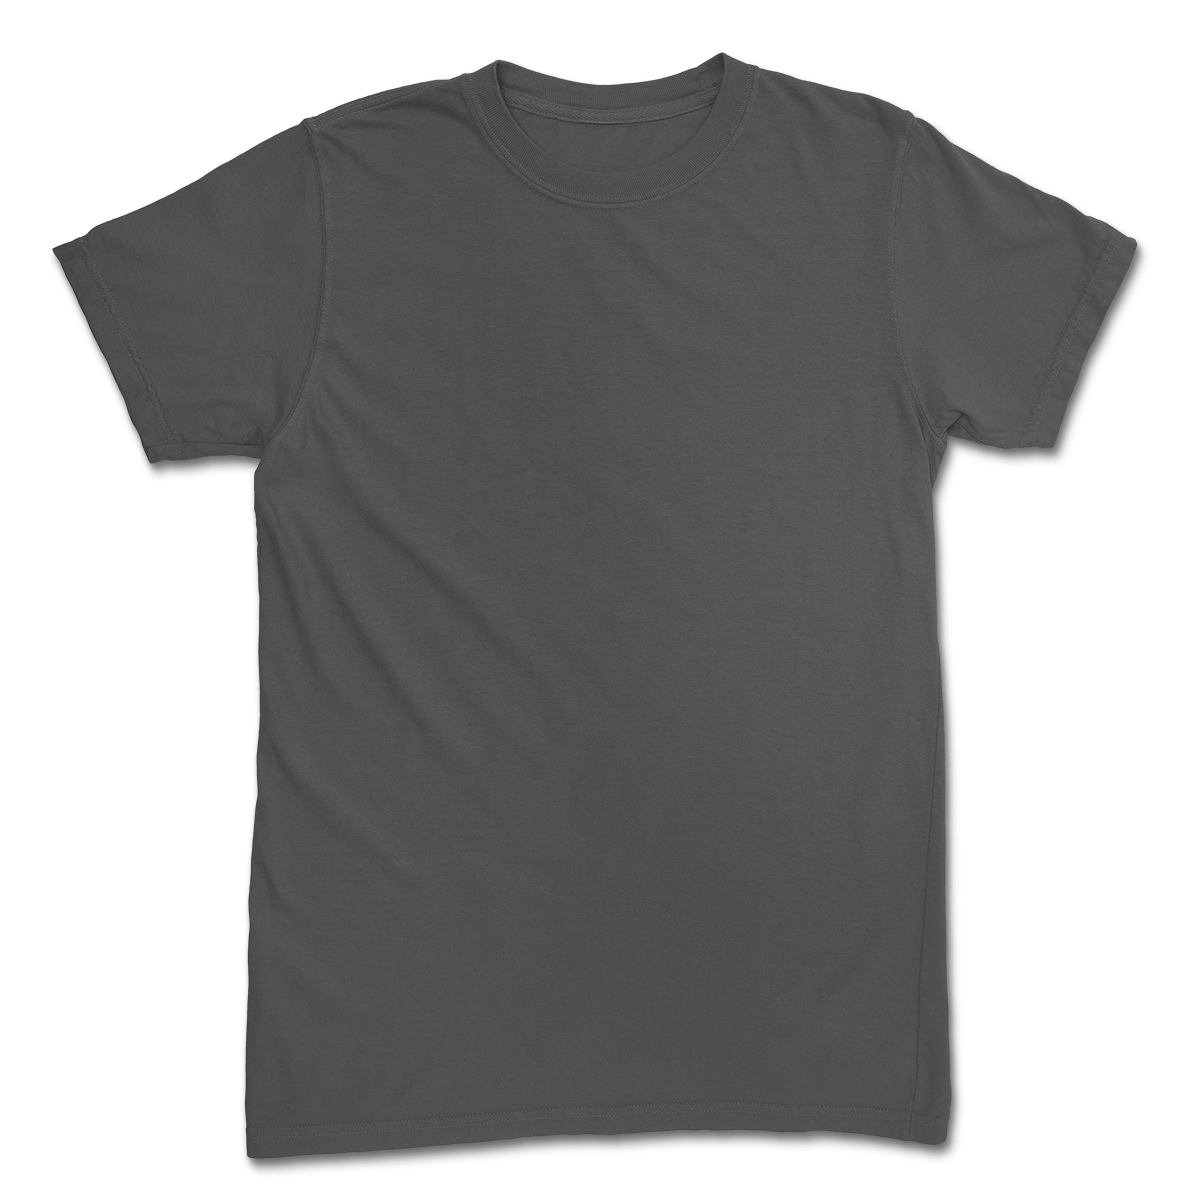 USA Made Unisex T-Shirt